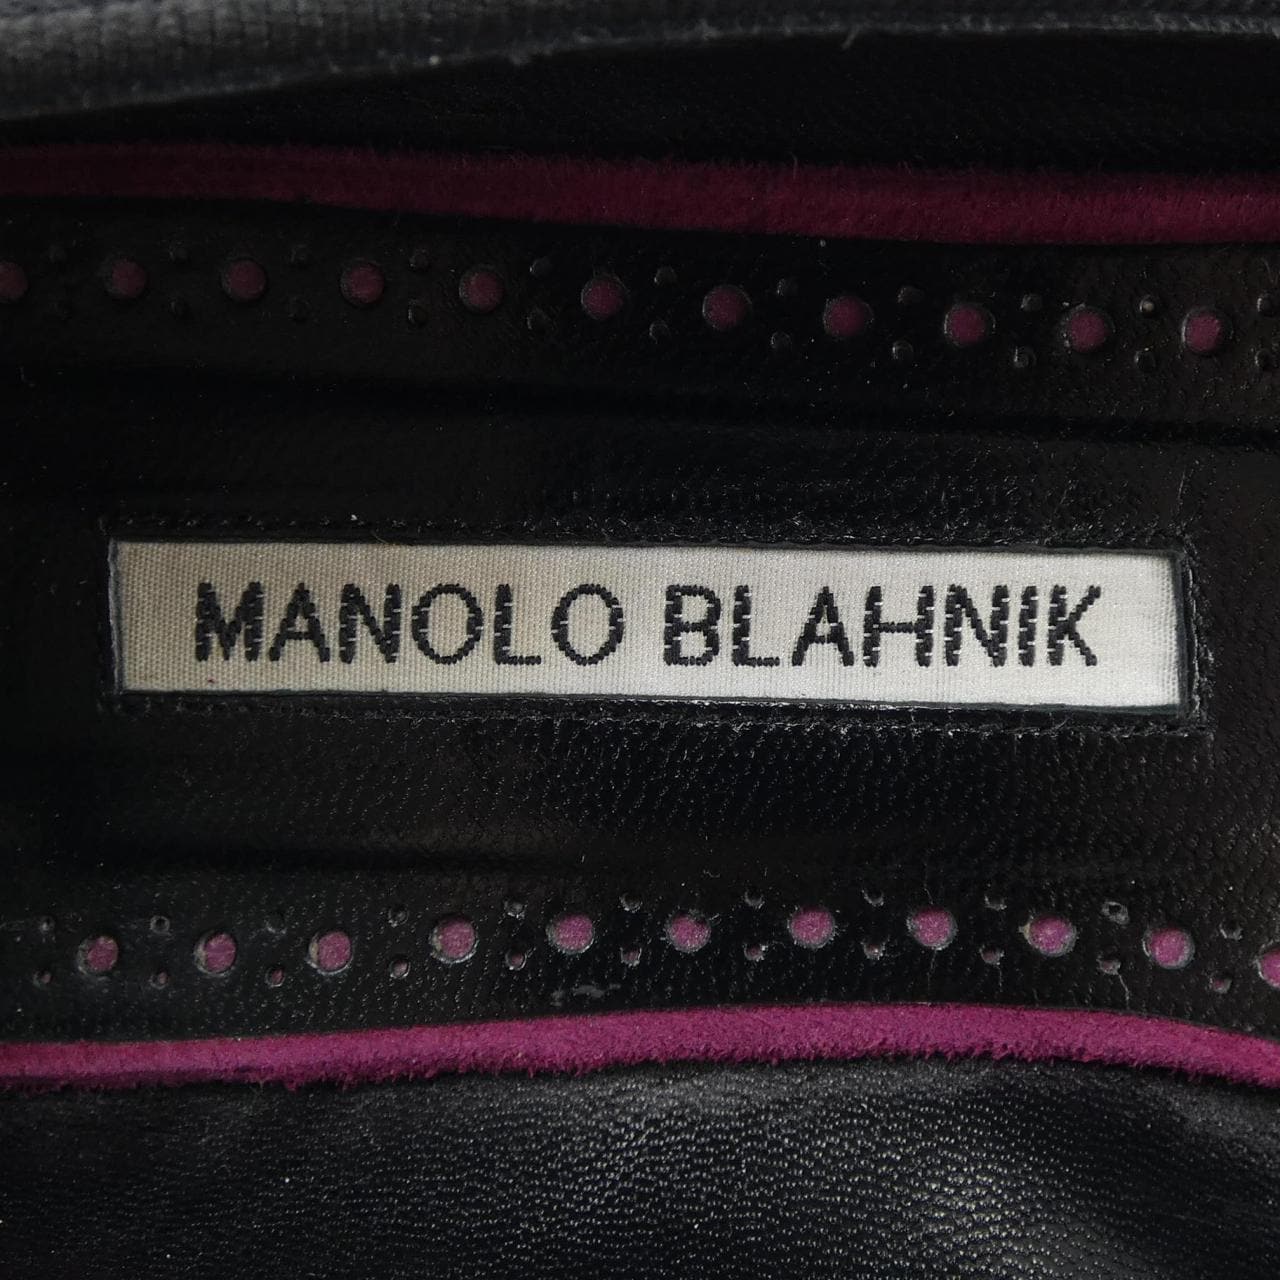 MANOLO BLAHNIK (Manolo Blahnik) 平底鞋